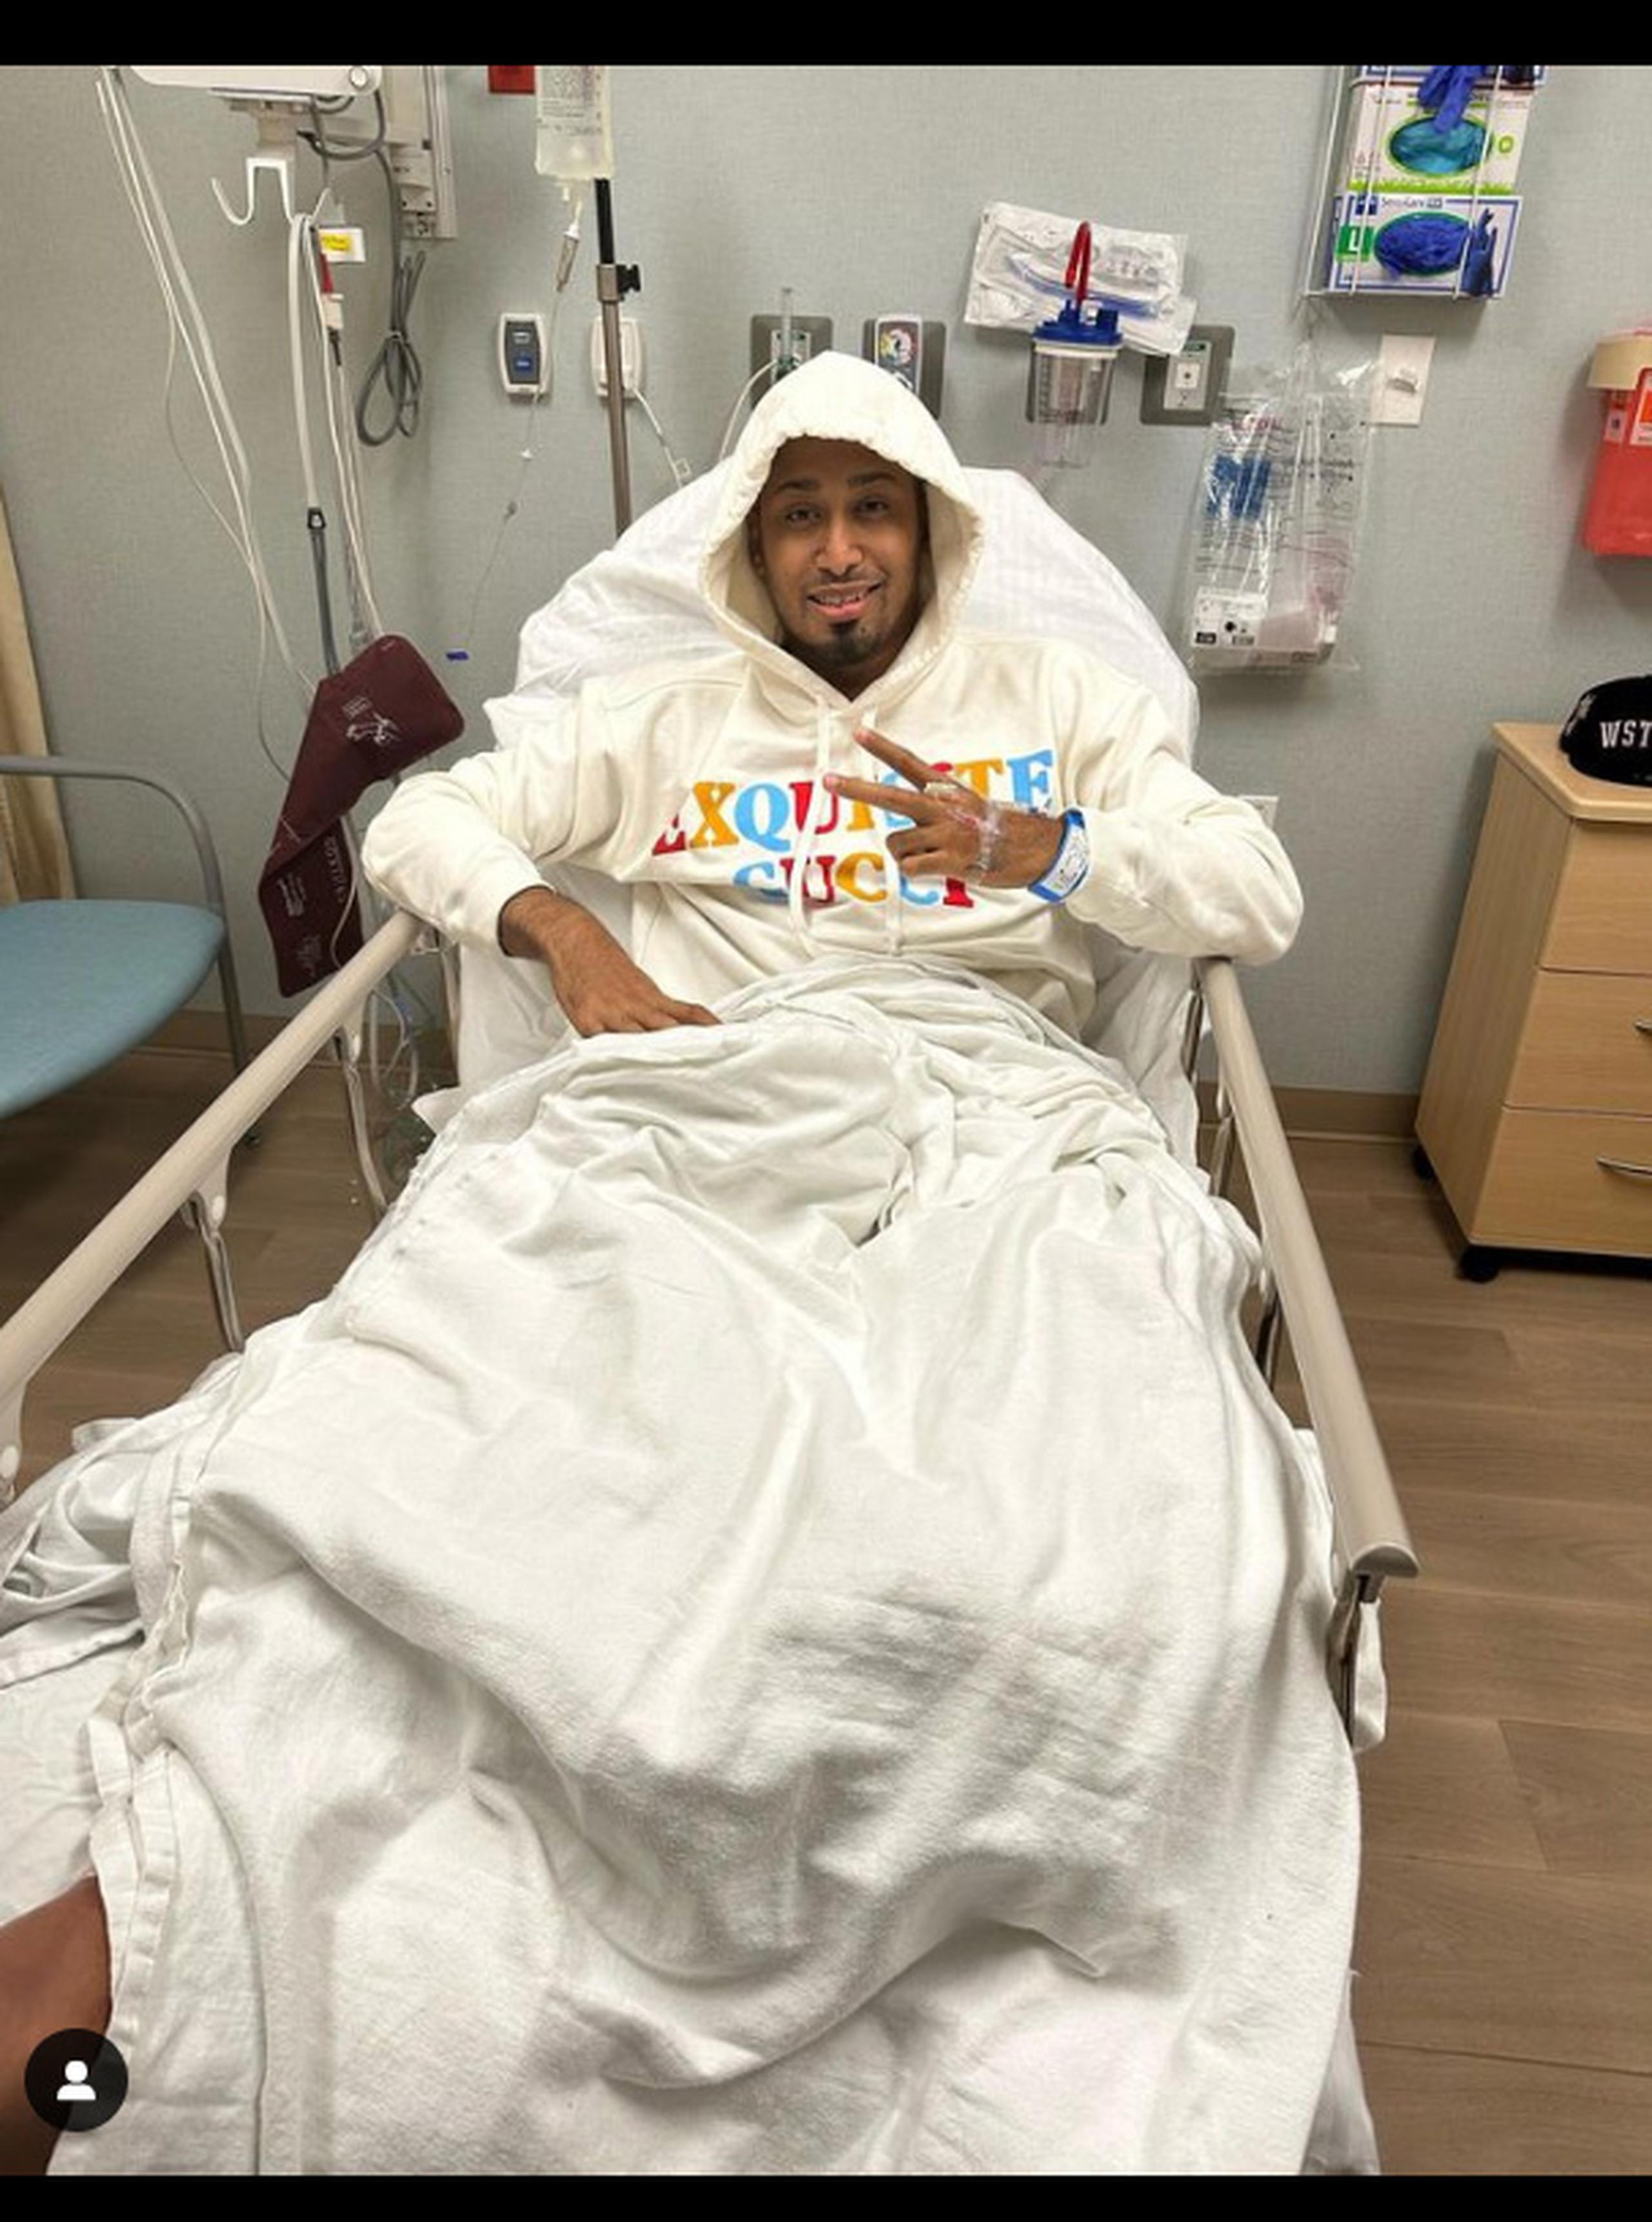 La esposa del pelotero compartió en sus redes sociales una foto de este en el hospital.